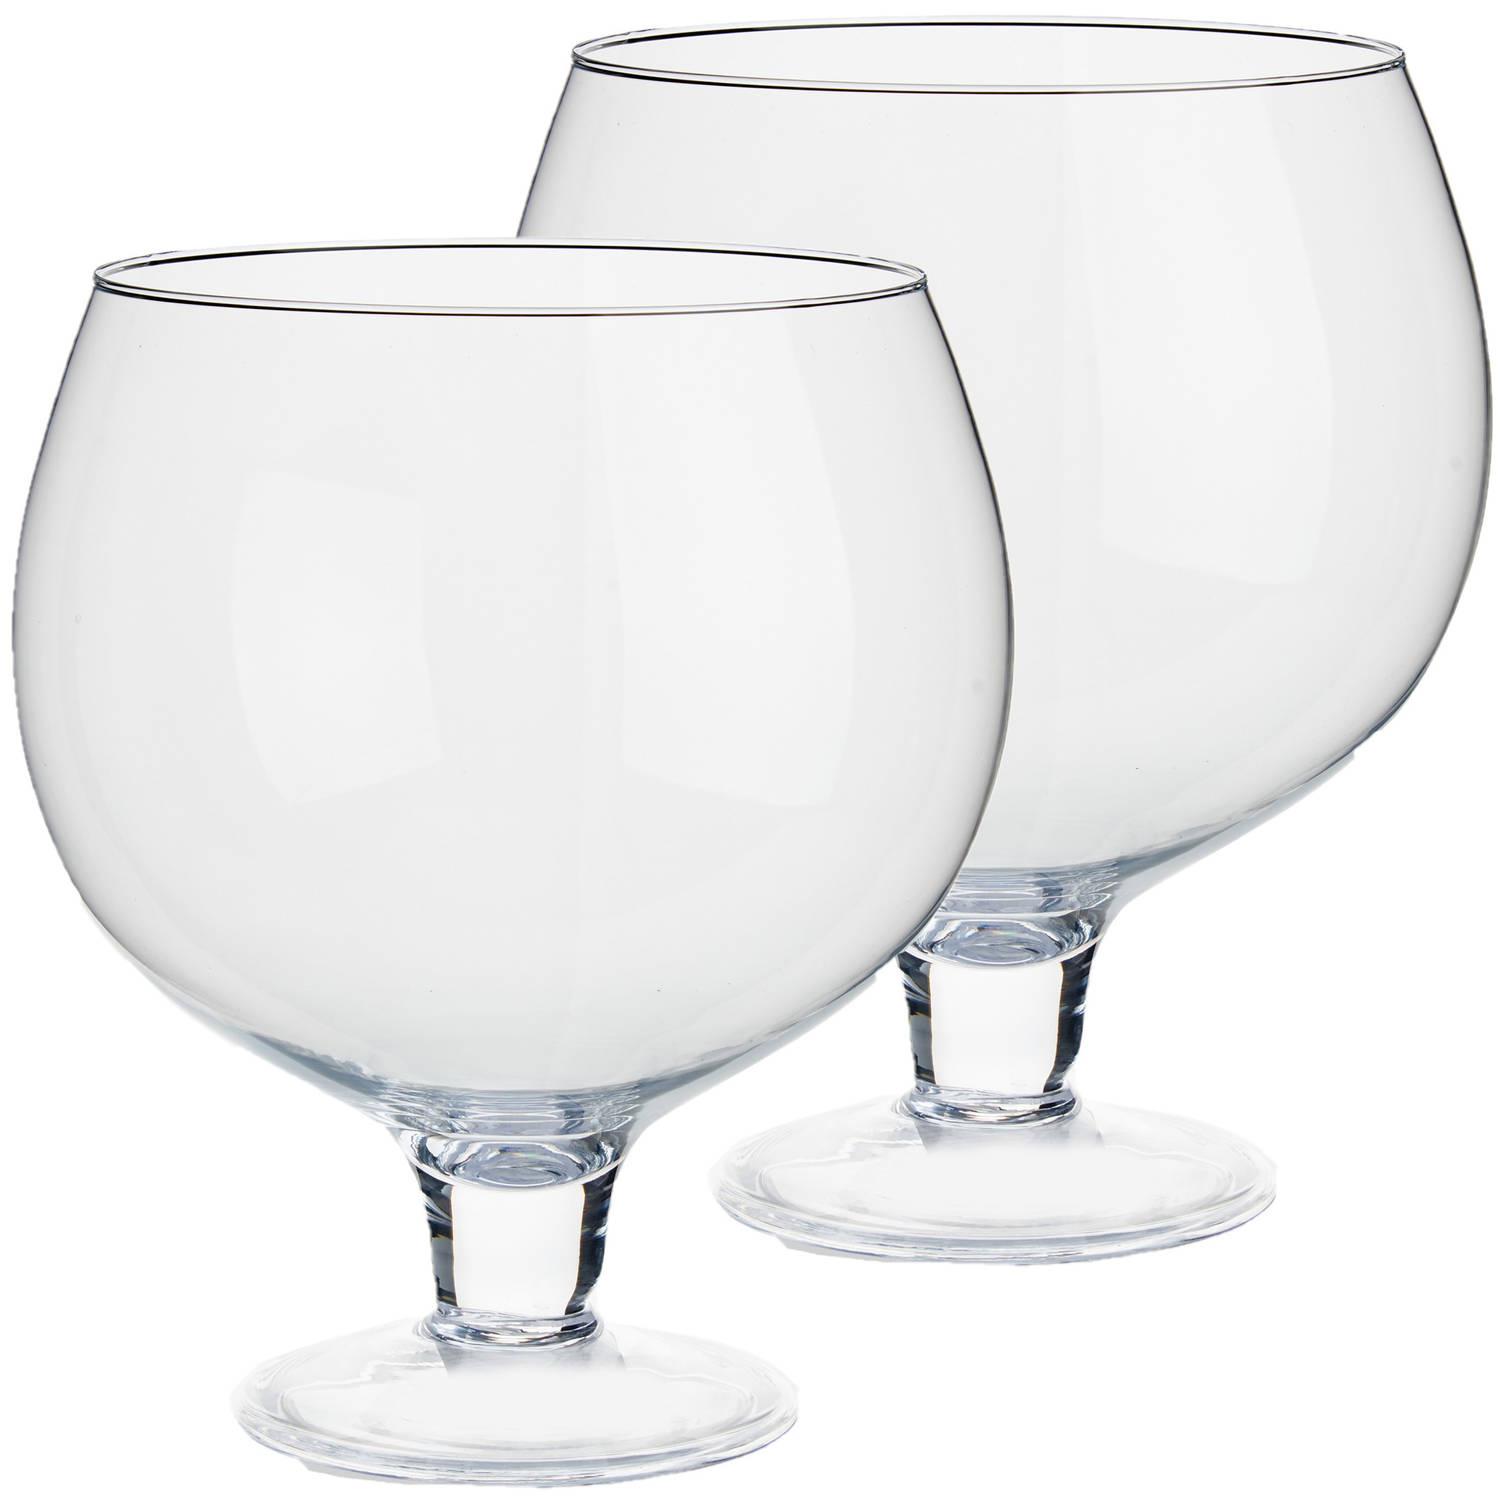 Glazen wijnglas/decoratie vaas 25 x cm - Vazen | Blokker